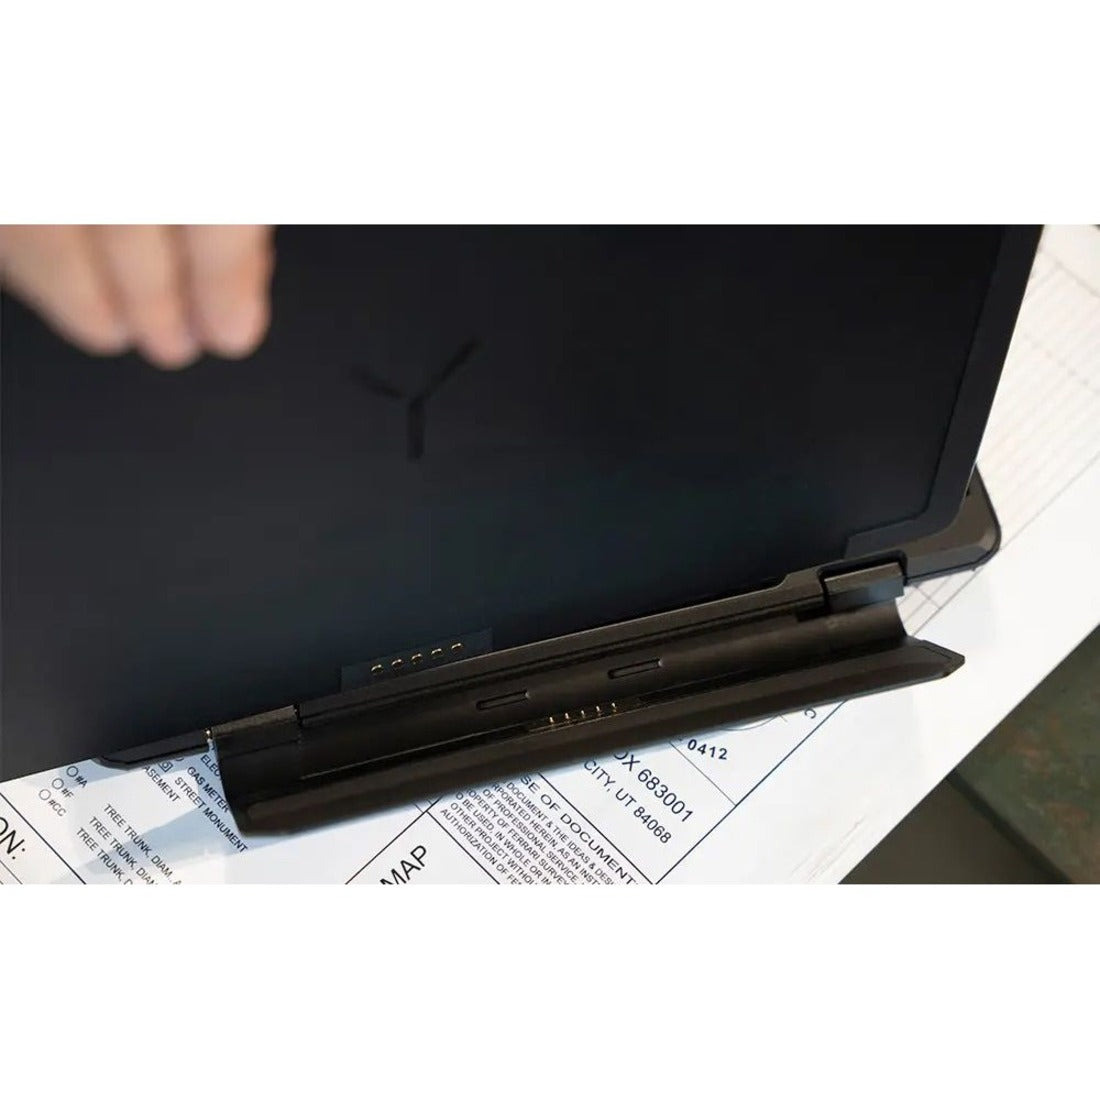 Brydge BRY70412 SP MAX+ Keyboard, Backlit, Pen Holder, Adjustable Tilt, Antimicrobial